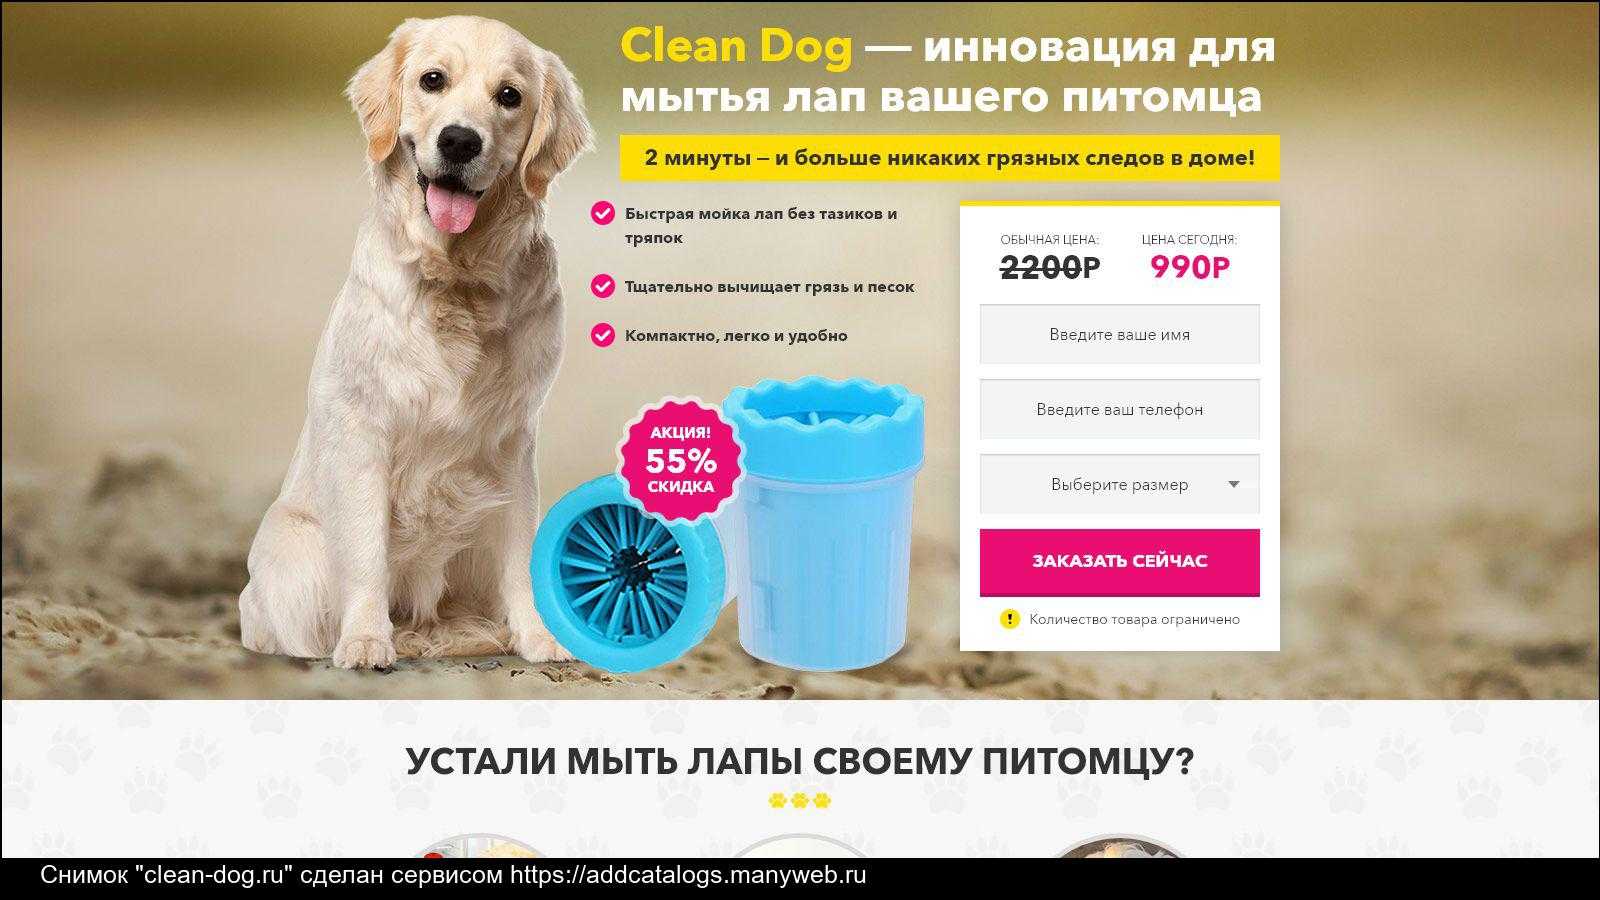 Кружка для мытья лап собакам: обзор, отзывы